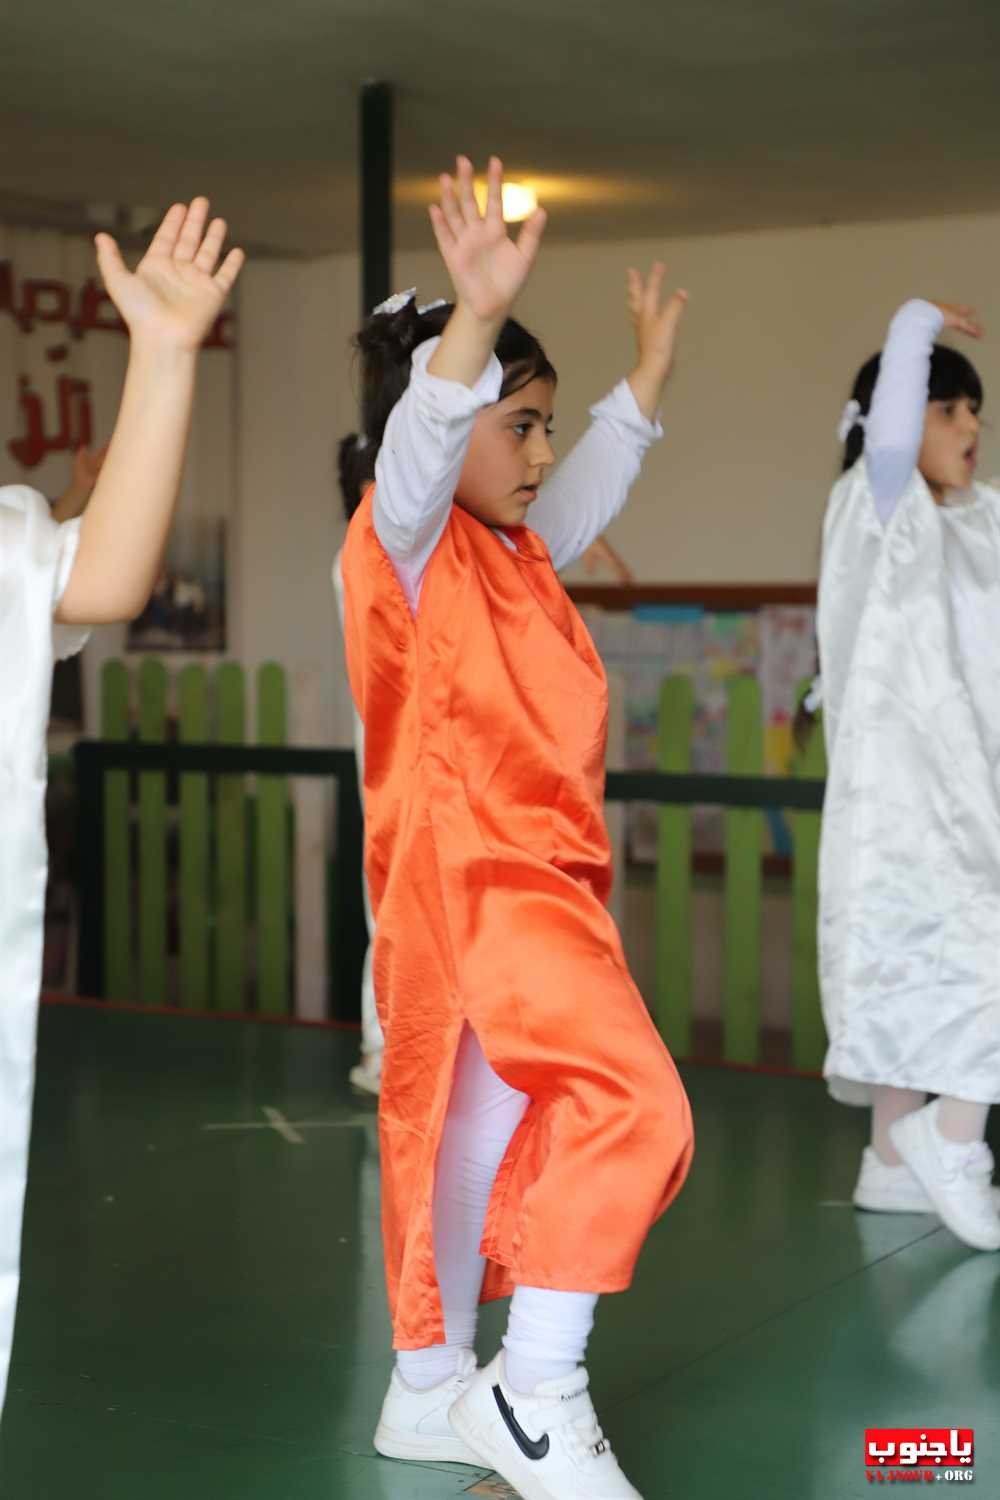 احتفال تربوي في مدرسة طيردبا المتوسطة الرسمية (250) صورة  تصوير : وسام حسن  الجزء الأول من الصور 